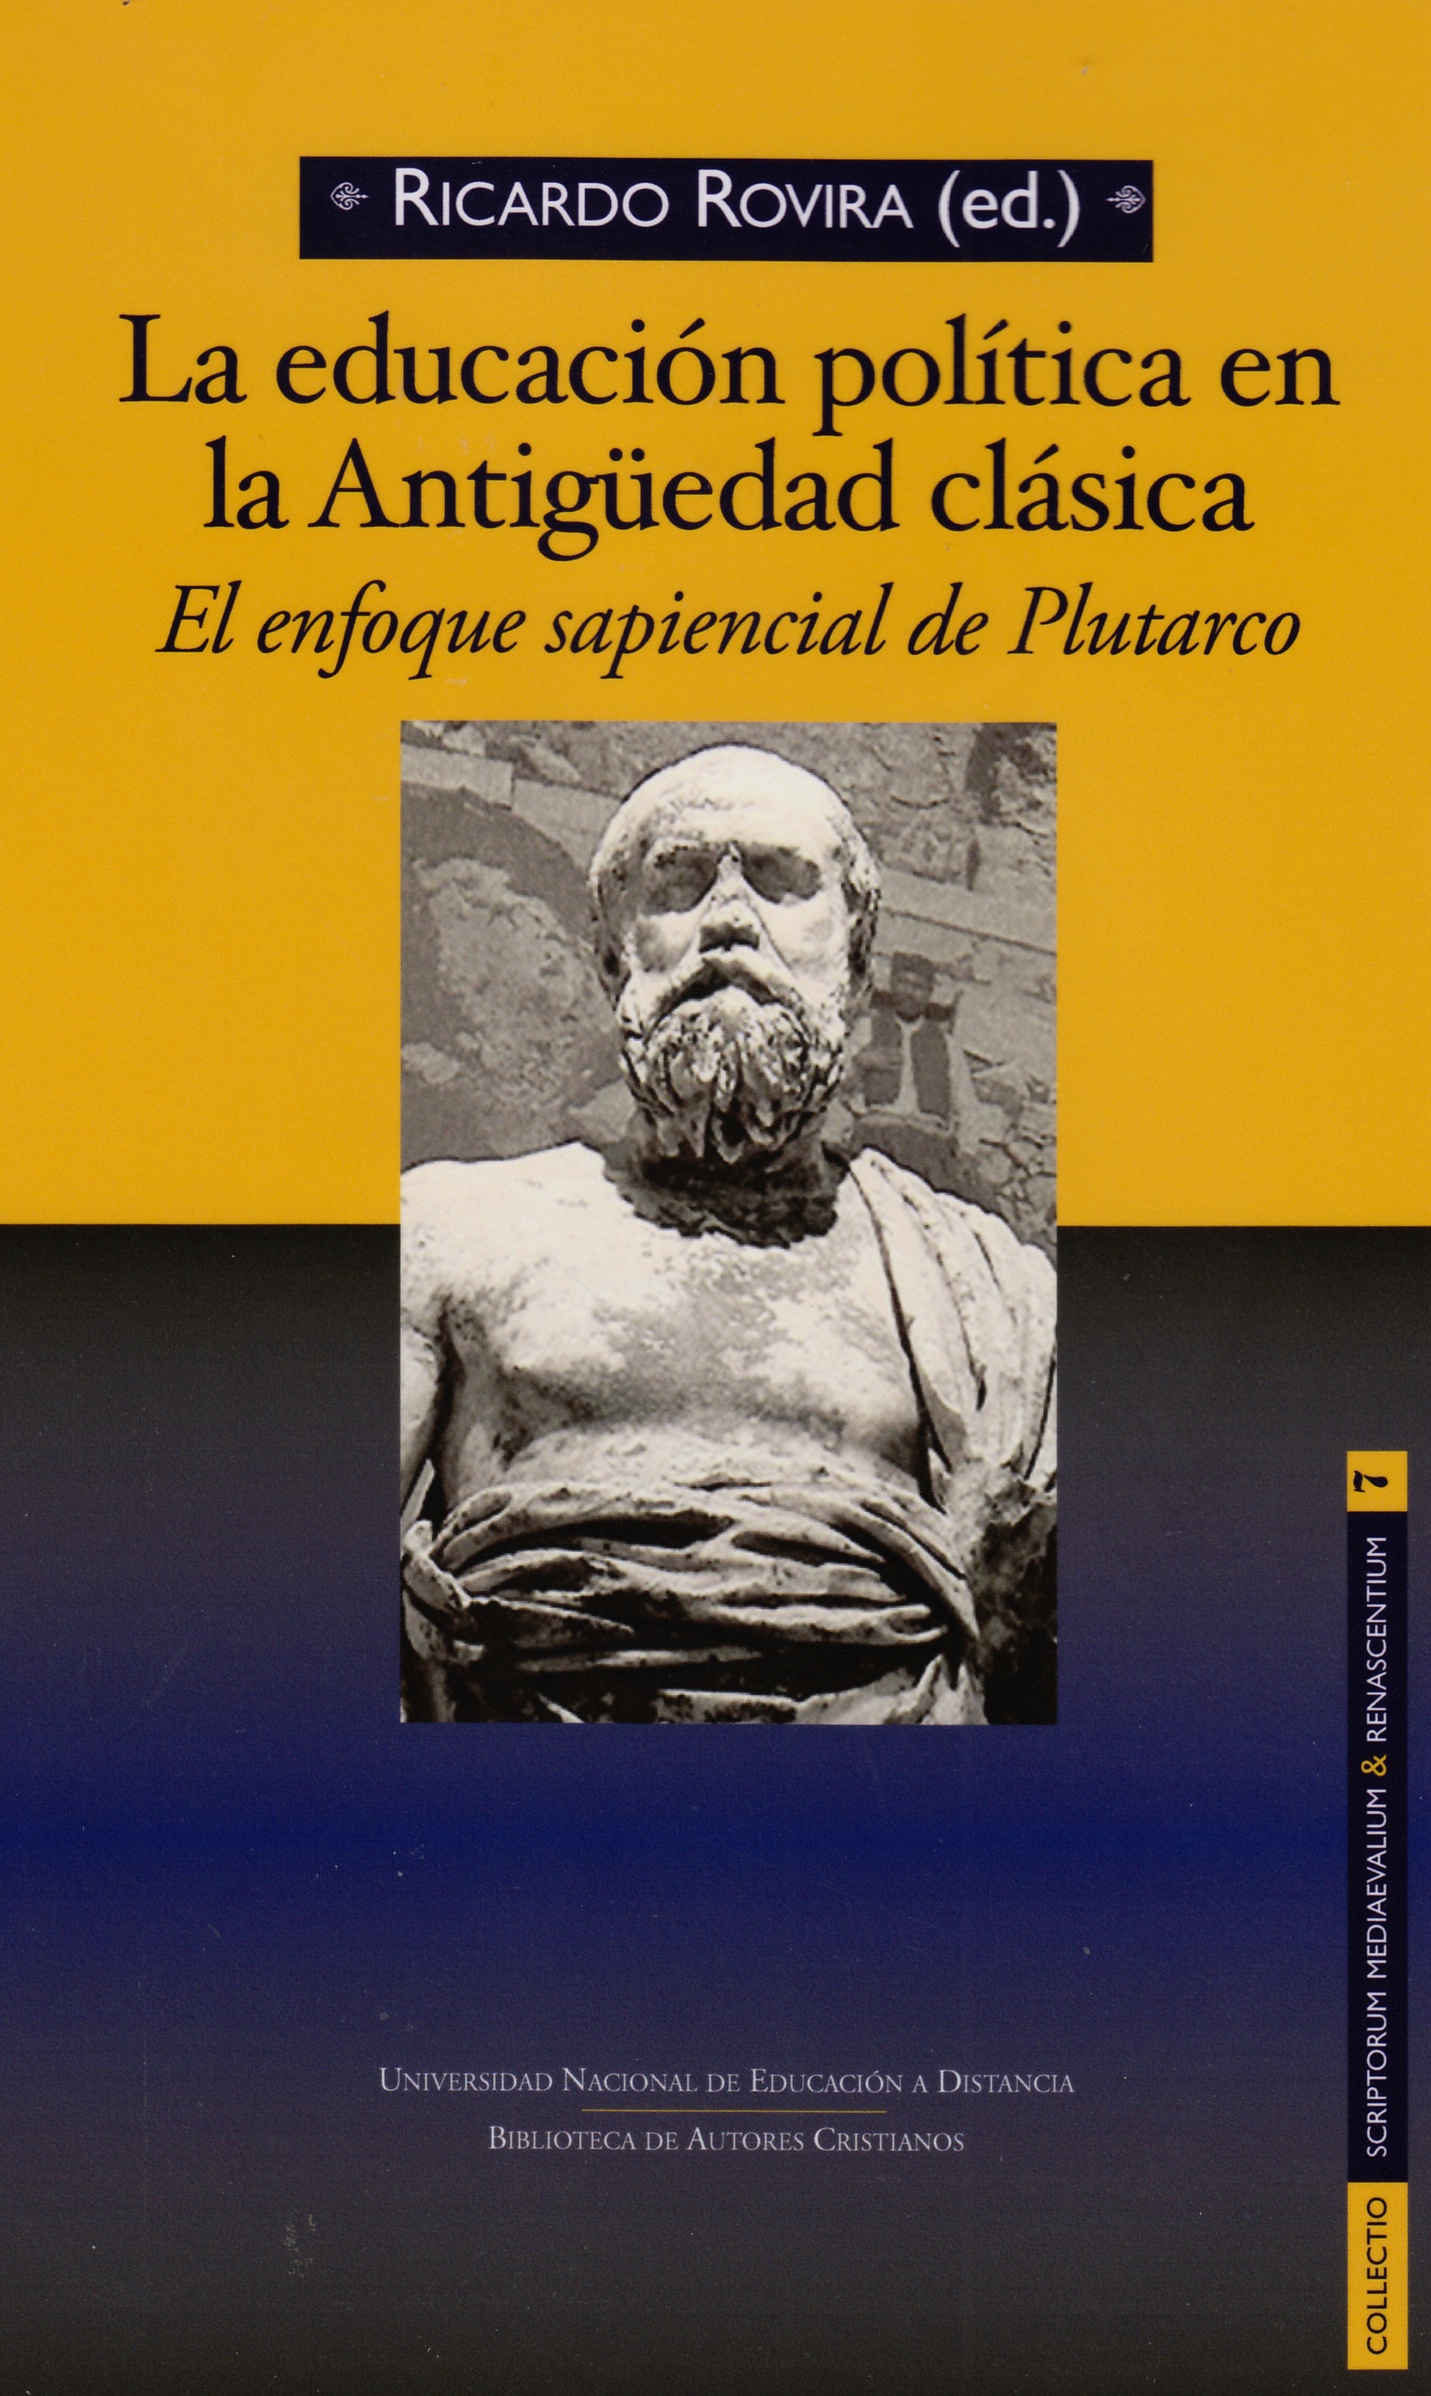 La Educación política en la Antigüedad clásica. El enfoque sapiencial de Plutarco